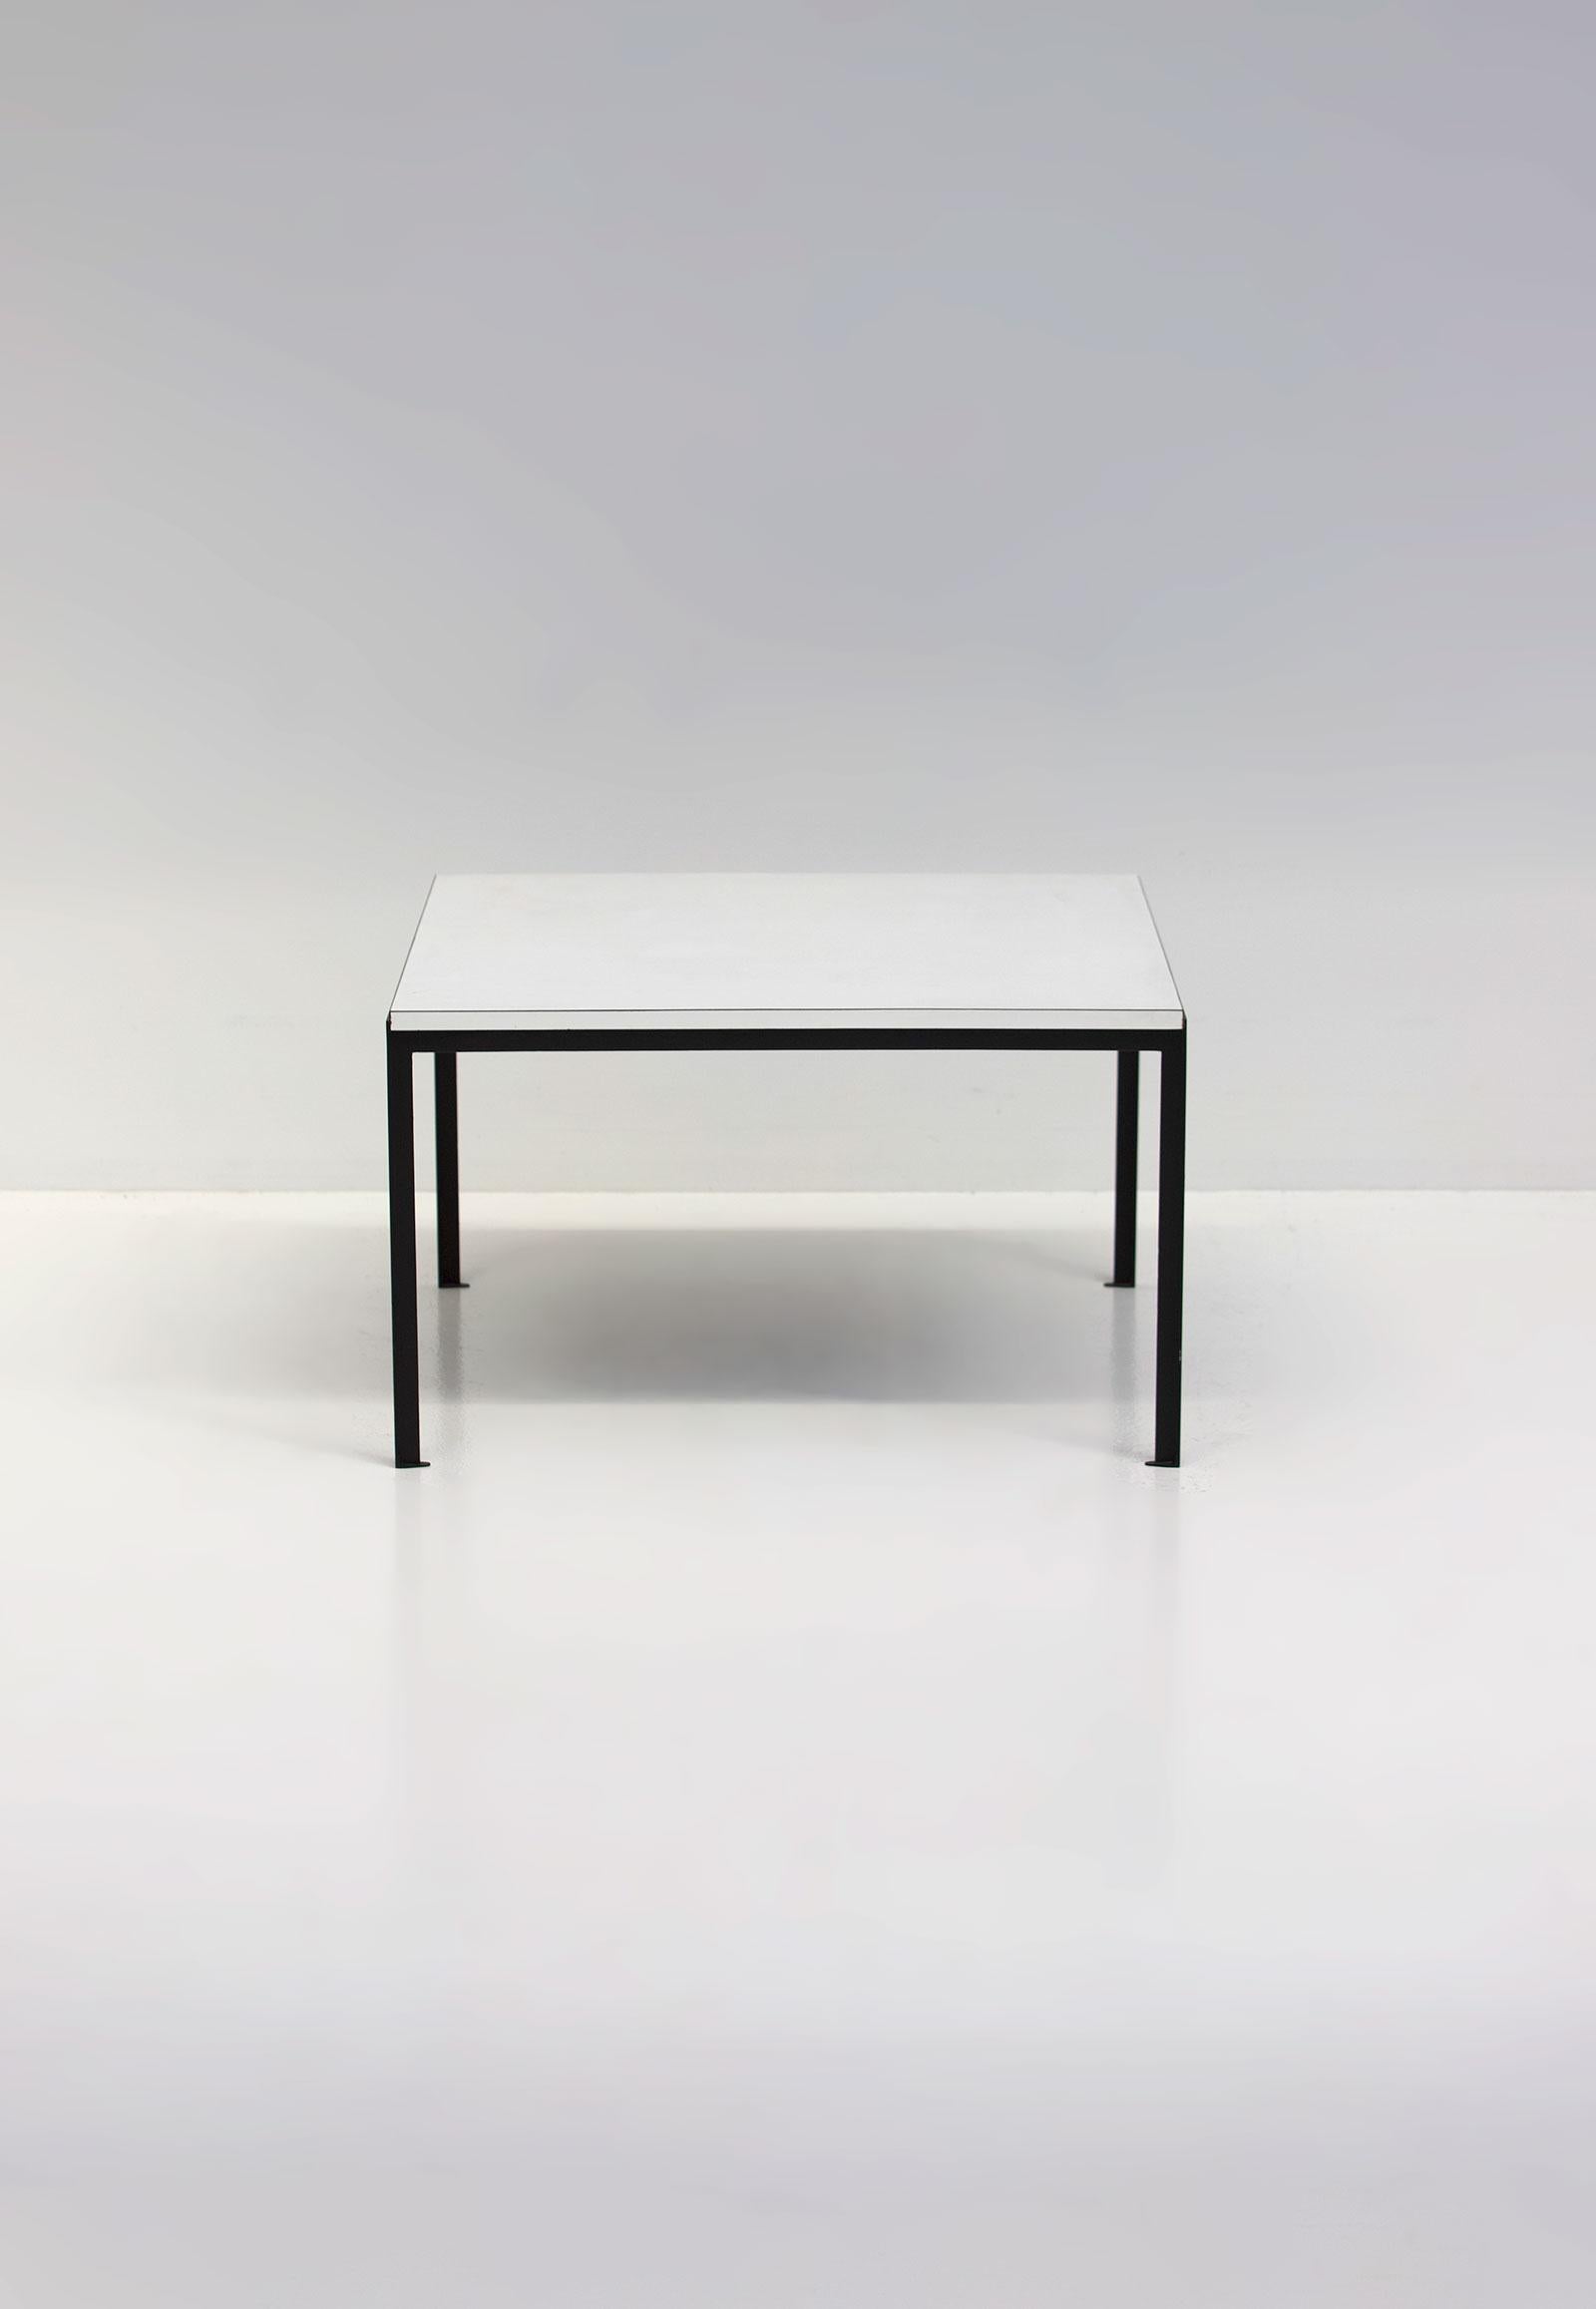 Früher Florence Knoll T-angle Beistelltisch, hergestellt von Knoll 1952. Der Tisch hat eine weiße Original-Laminatplatte und ein Untergestell aus Edelstahl. Ein schönes Beispiel für klassisches modernistisches Design. Der Tisch befindet sich in